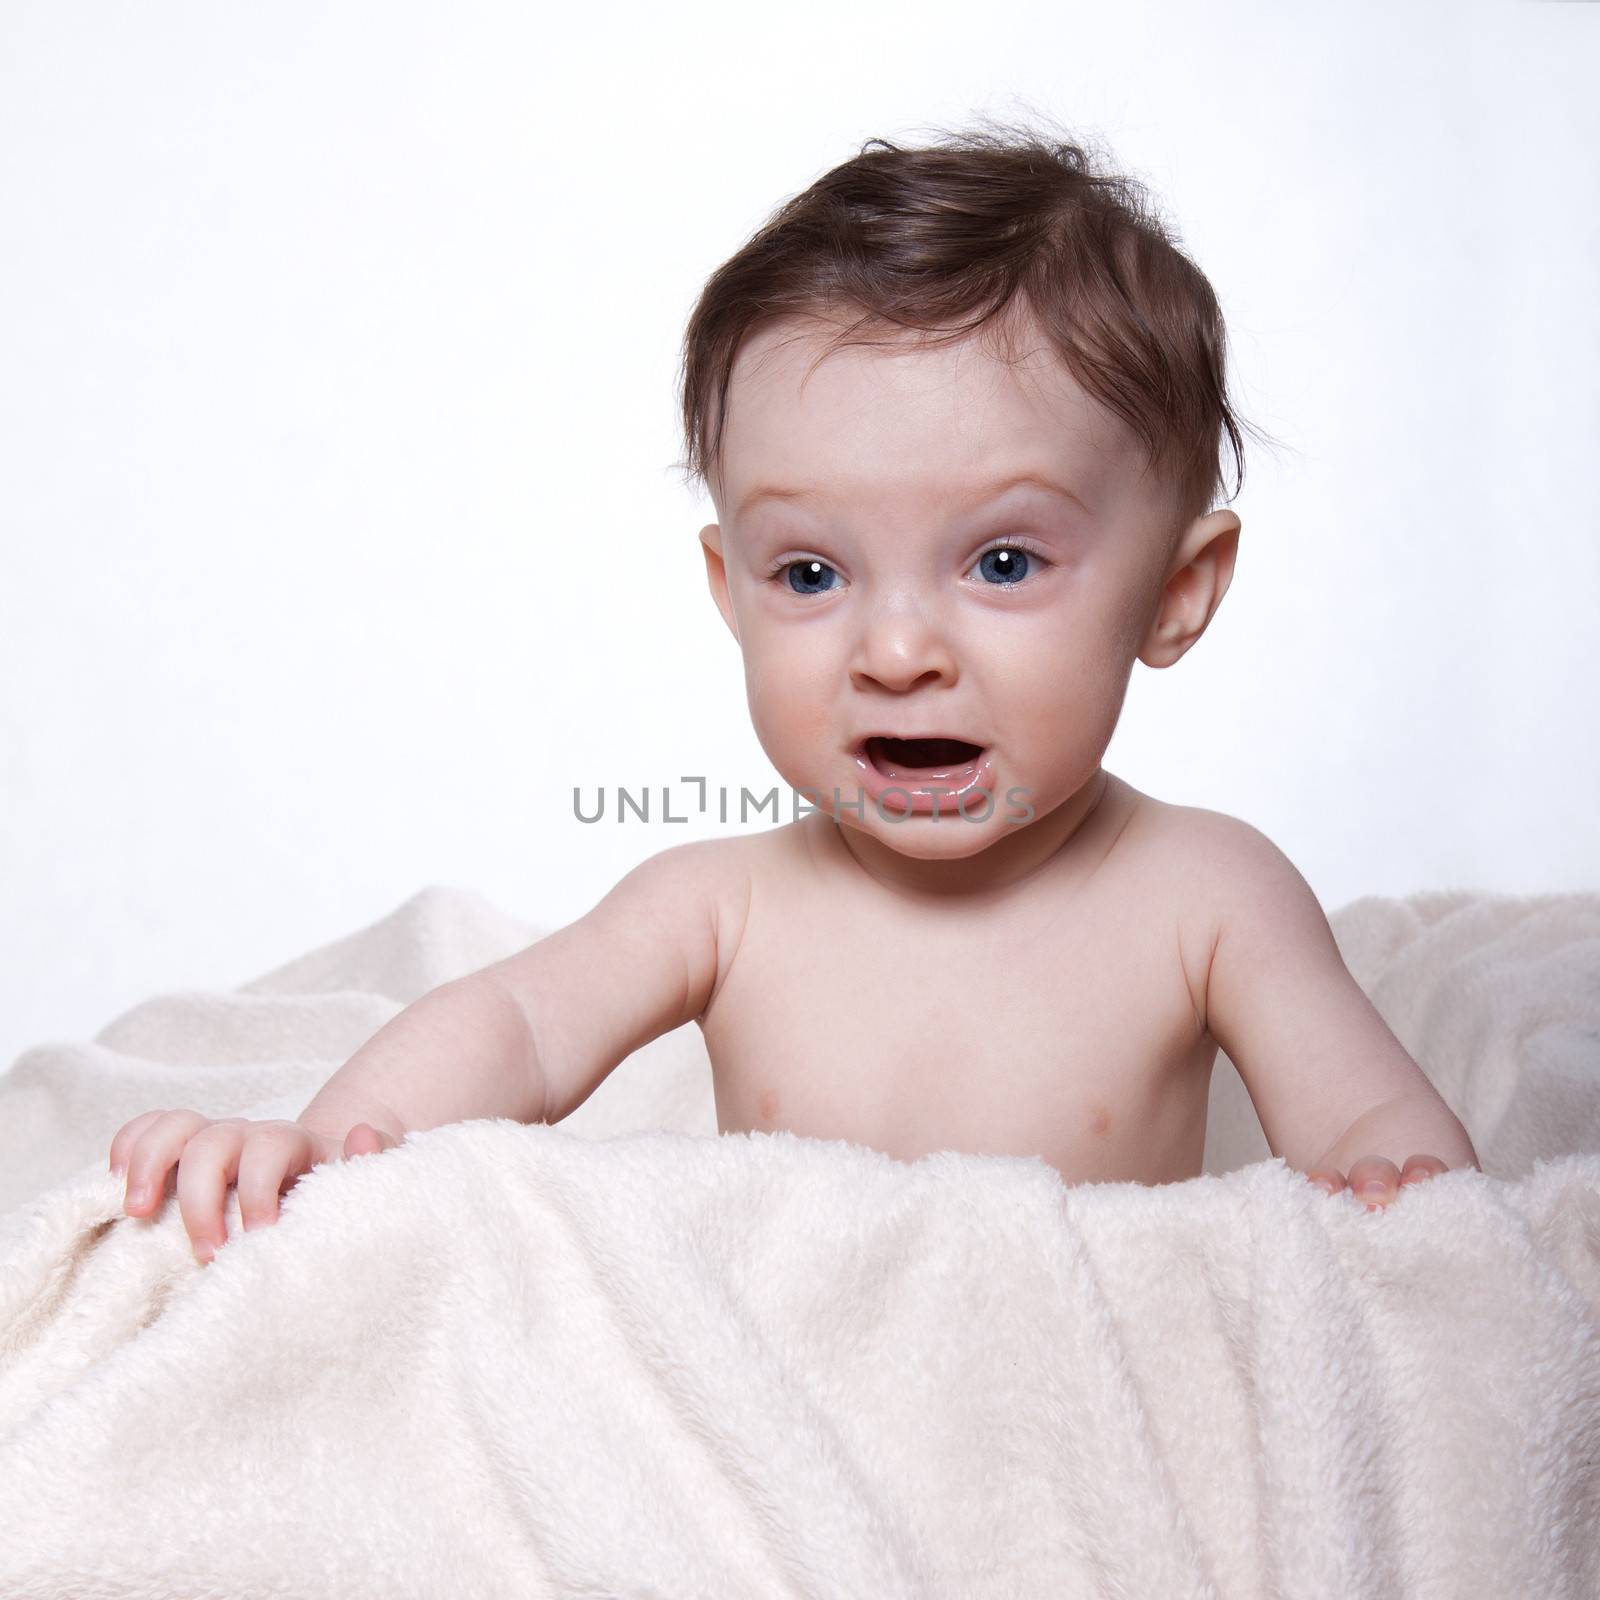 Little baby boy by maros_b